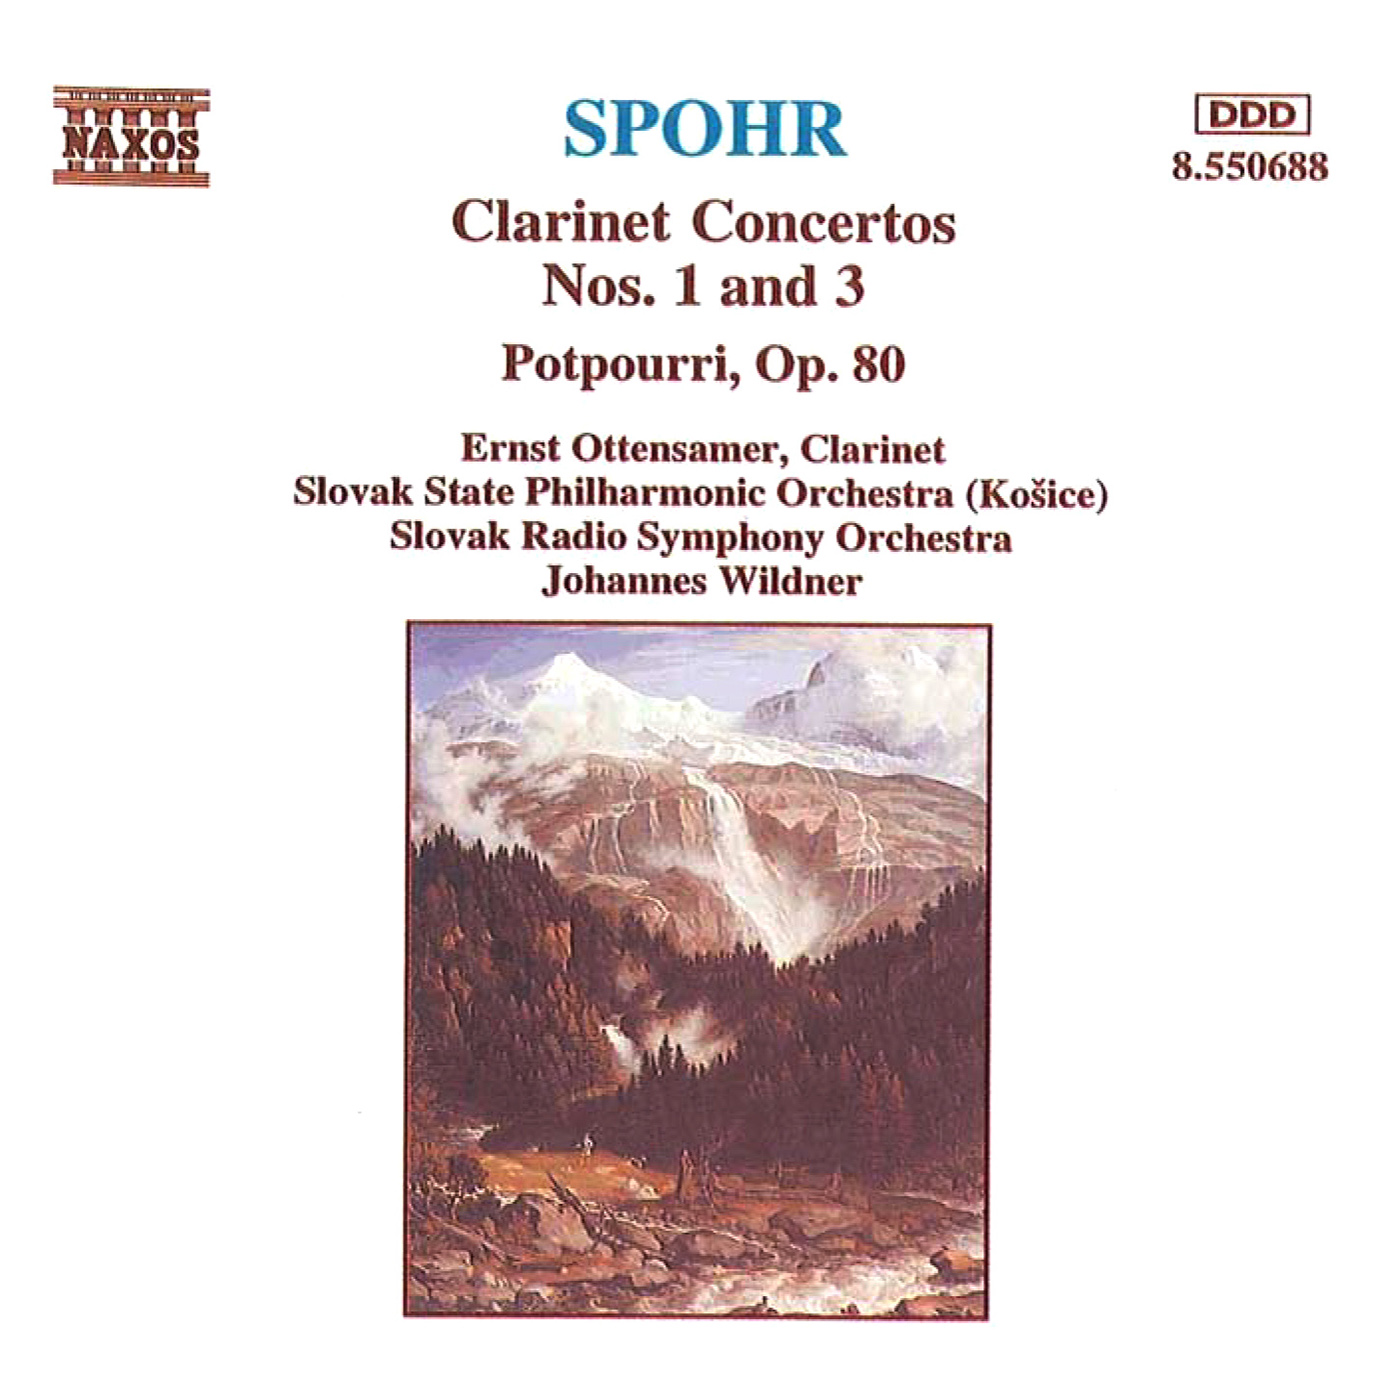 Clarinet Concerto No. 1 in C Minor, Op. 26: I. Adagio - Allegro